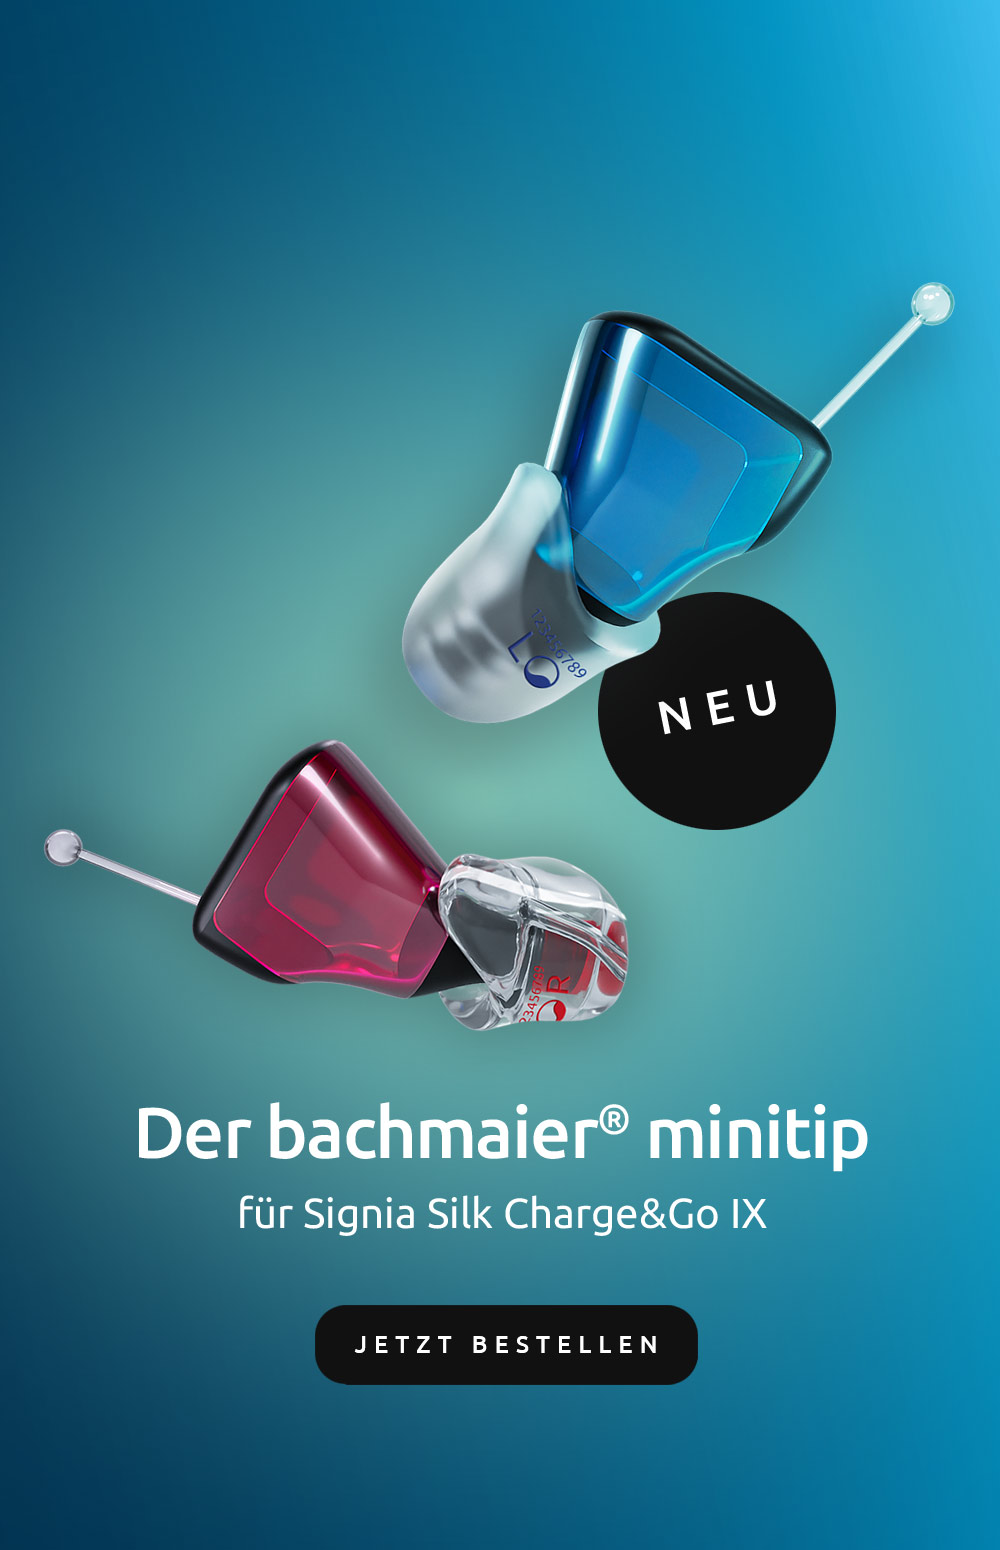 Jetzt entdecken: Der neue bachmaier minitip für Signia Silk Charge&Go IX